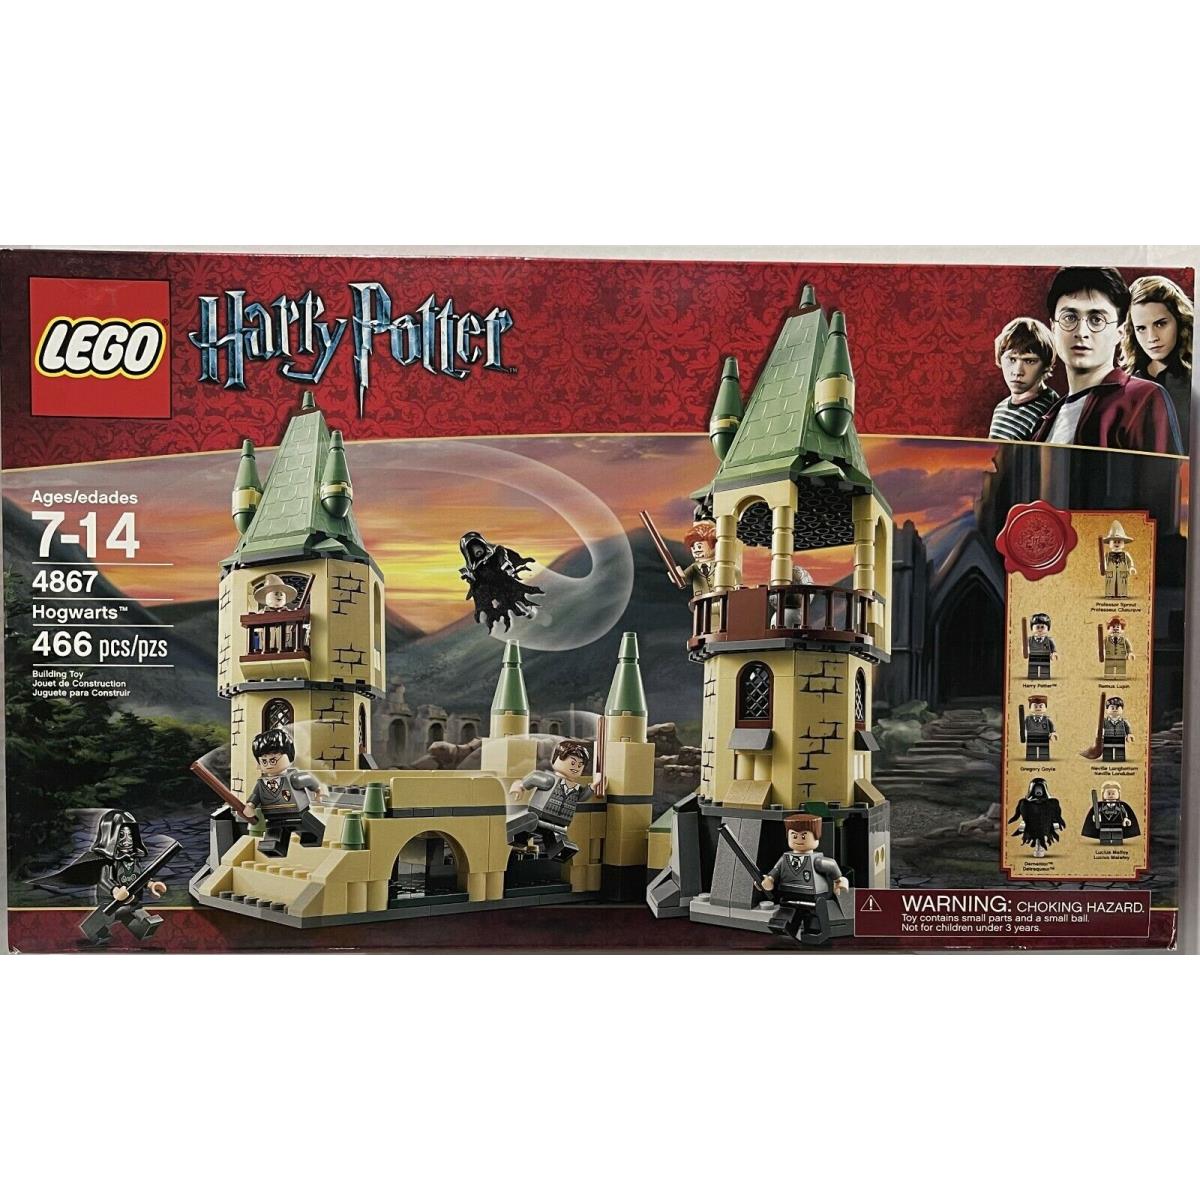 Lego Harry Potter Hogwarts 4867 Retired Set 466pcs 7-14+